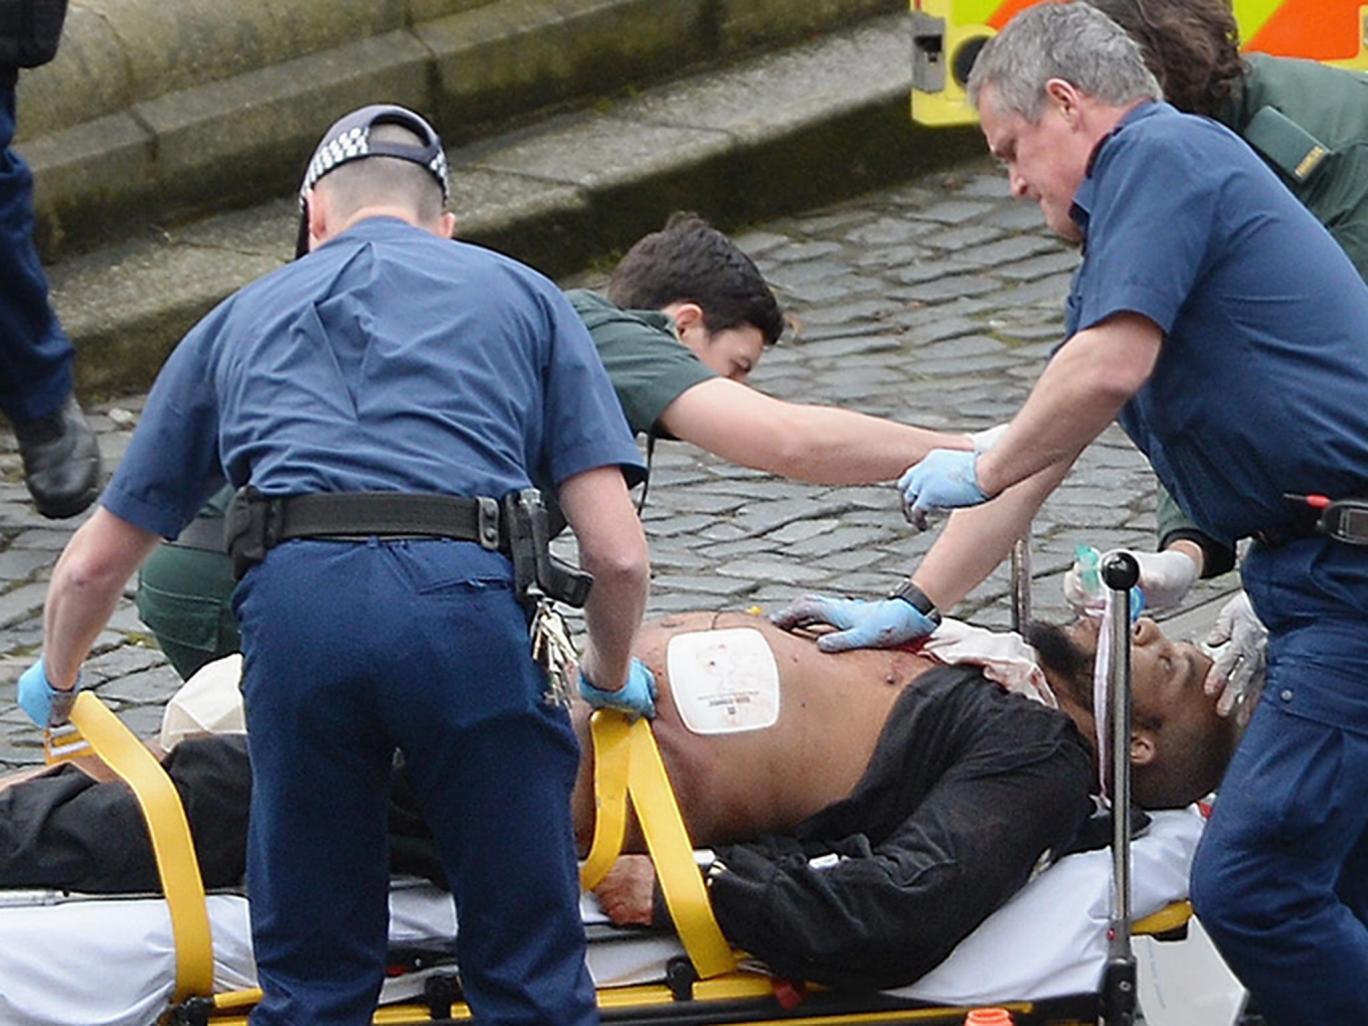 Acesta este unul dintre terorişti, care a fost împuşcat după ce a înjunghiat un poliţist şi a lovit mai multe persoane cu maşina. Sursă foto - The Independent